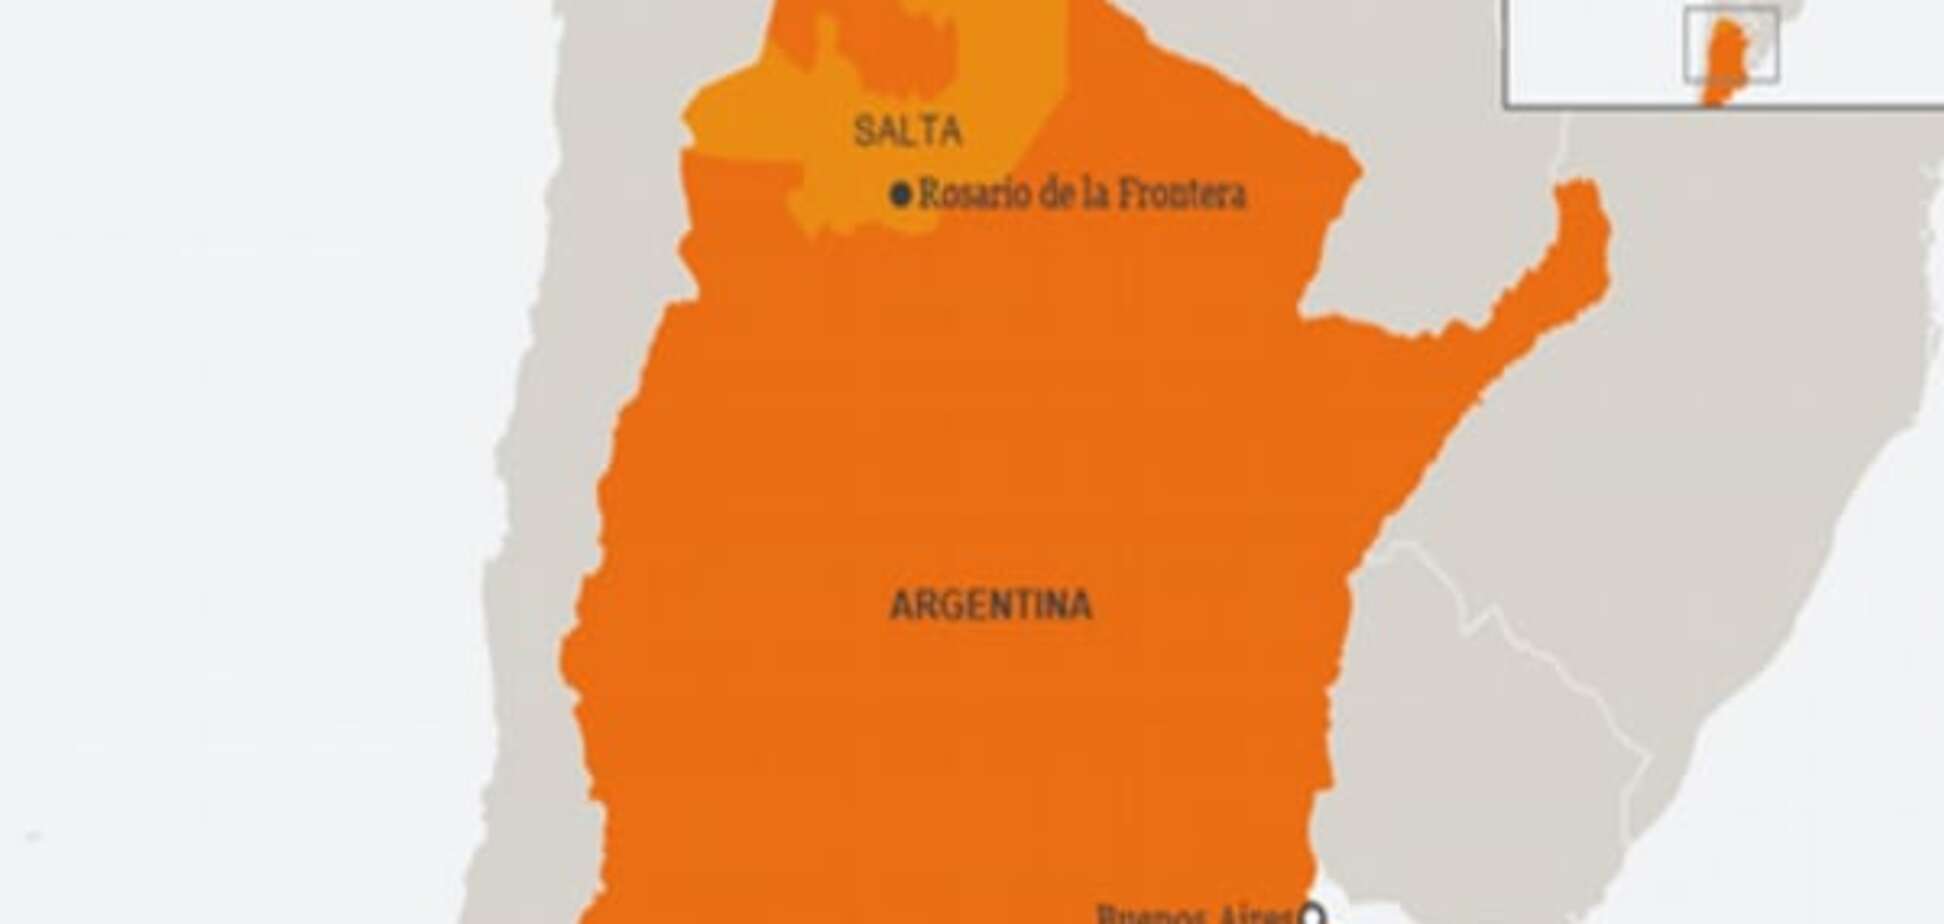 Понад 40 прикордонників загинули внаслідок аварії автобуса в Аргентині